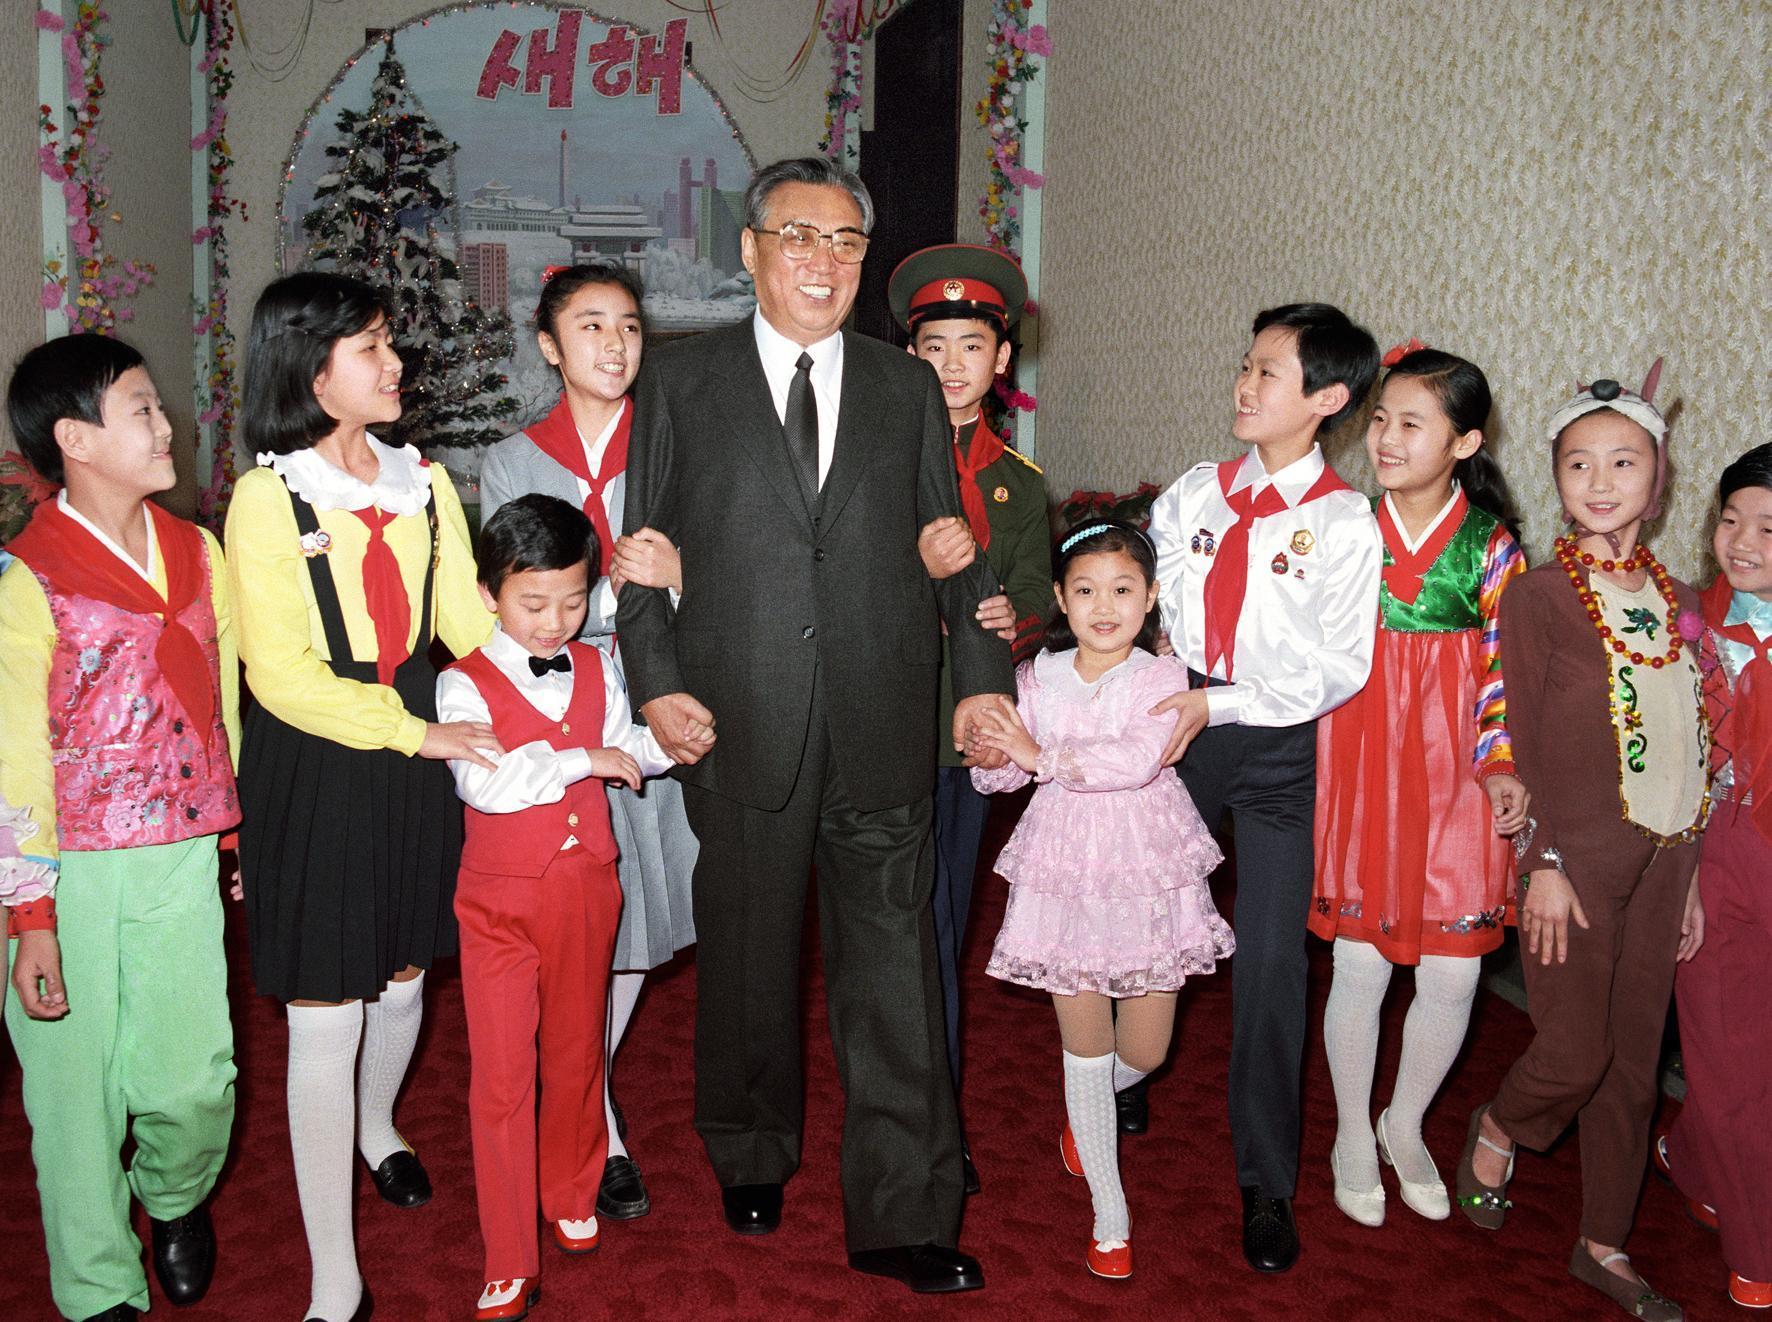   الرئيس كيم إيل سونغ والأطفال